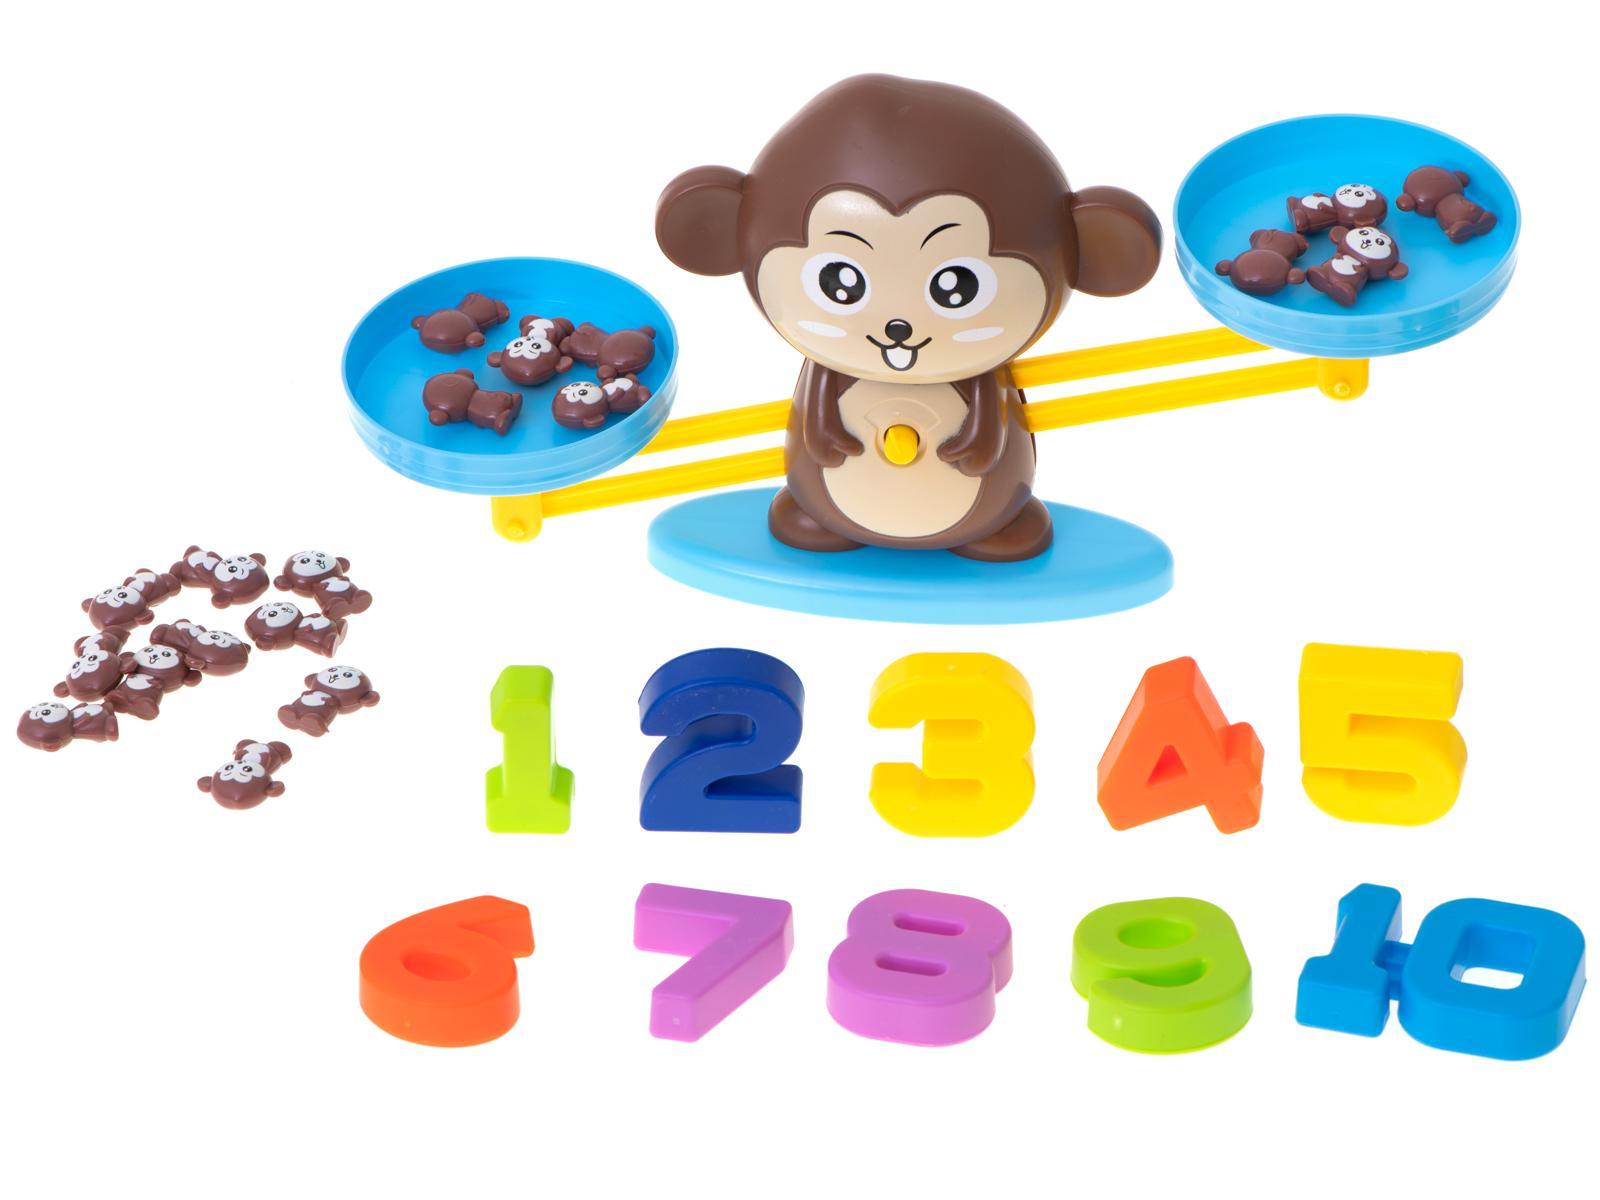 Waga szalkowa edukacyjna nauka liczenia małpka duża dla dzieci 34,5x9,5x8 cm 2 Full Screen